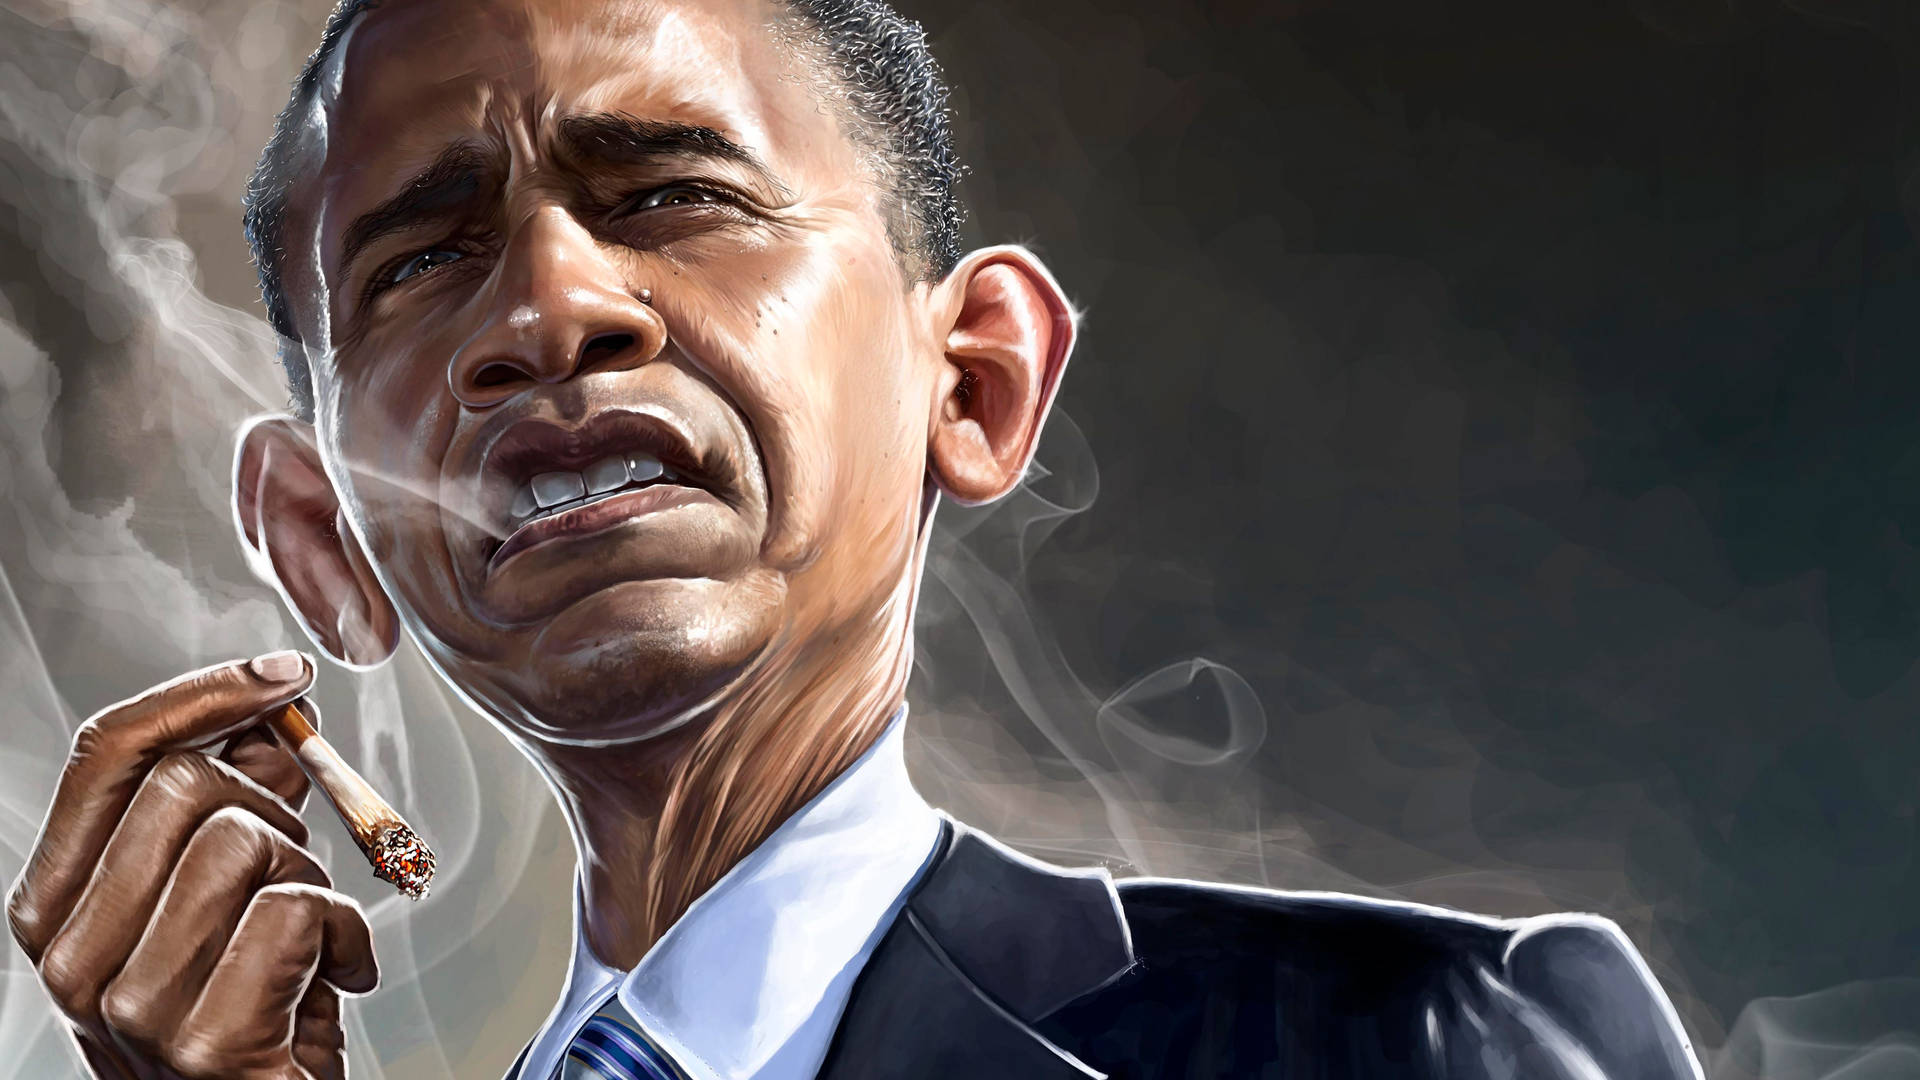 Barack Obama Caricature Illustration